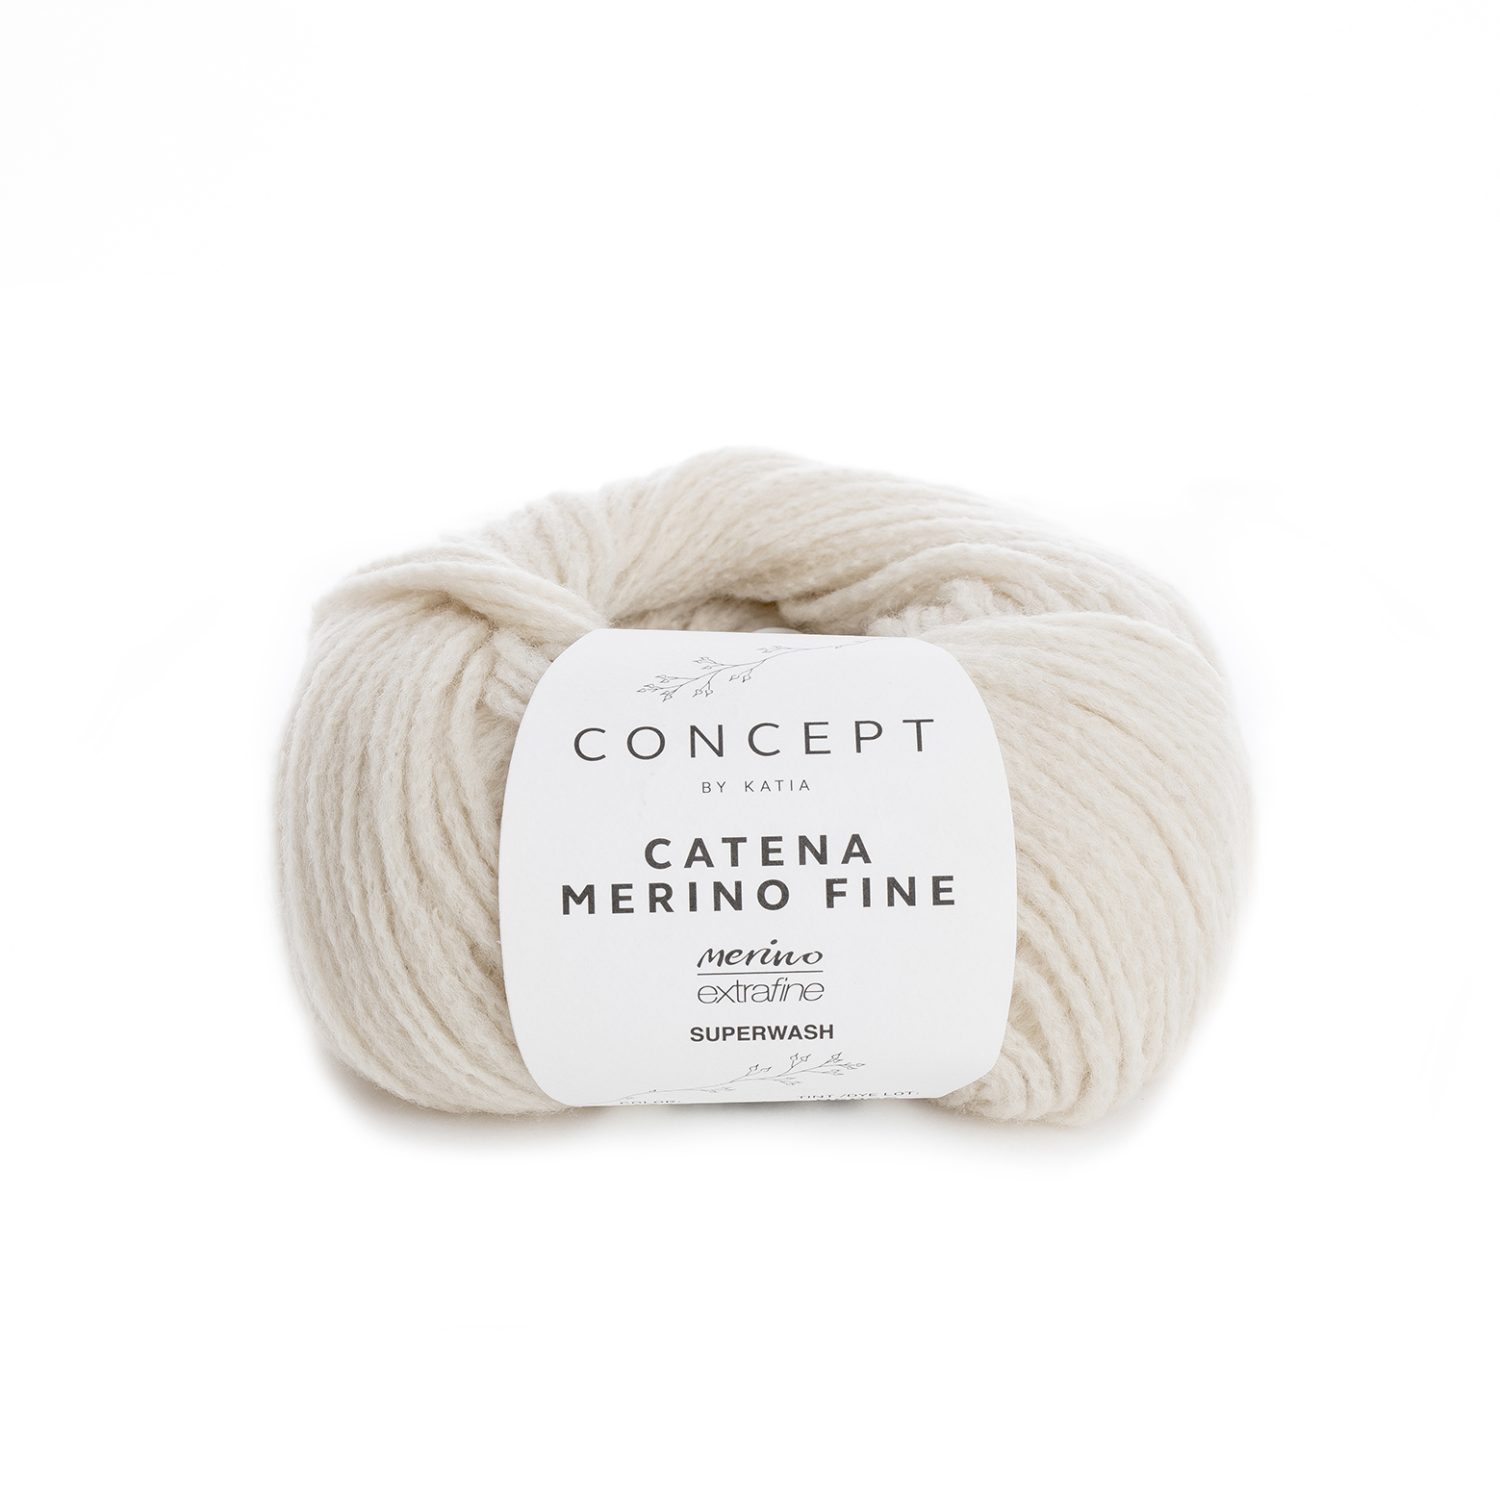 yarn-wool-catenamerinofine-knit-merino-extrafine-superwash-polyamide-beige-autumn-winter-katia-273-g